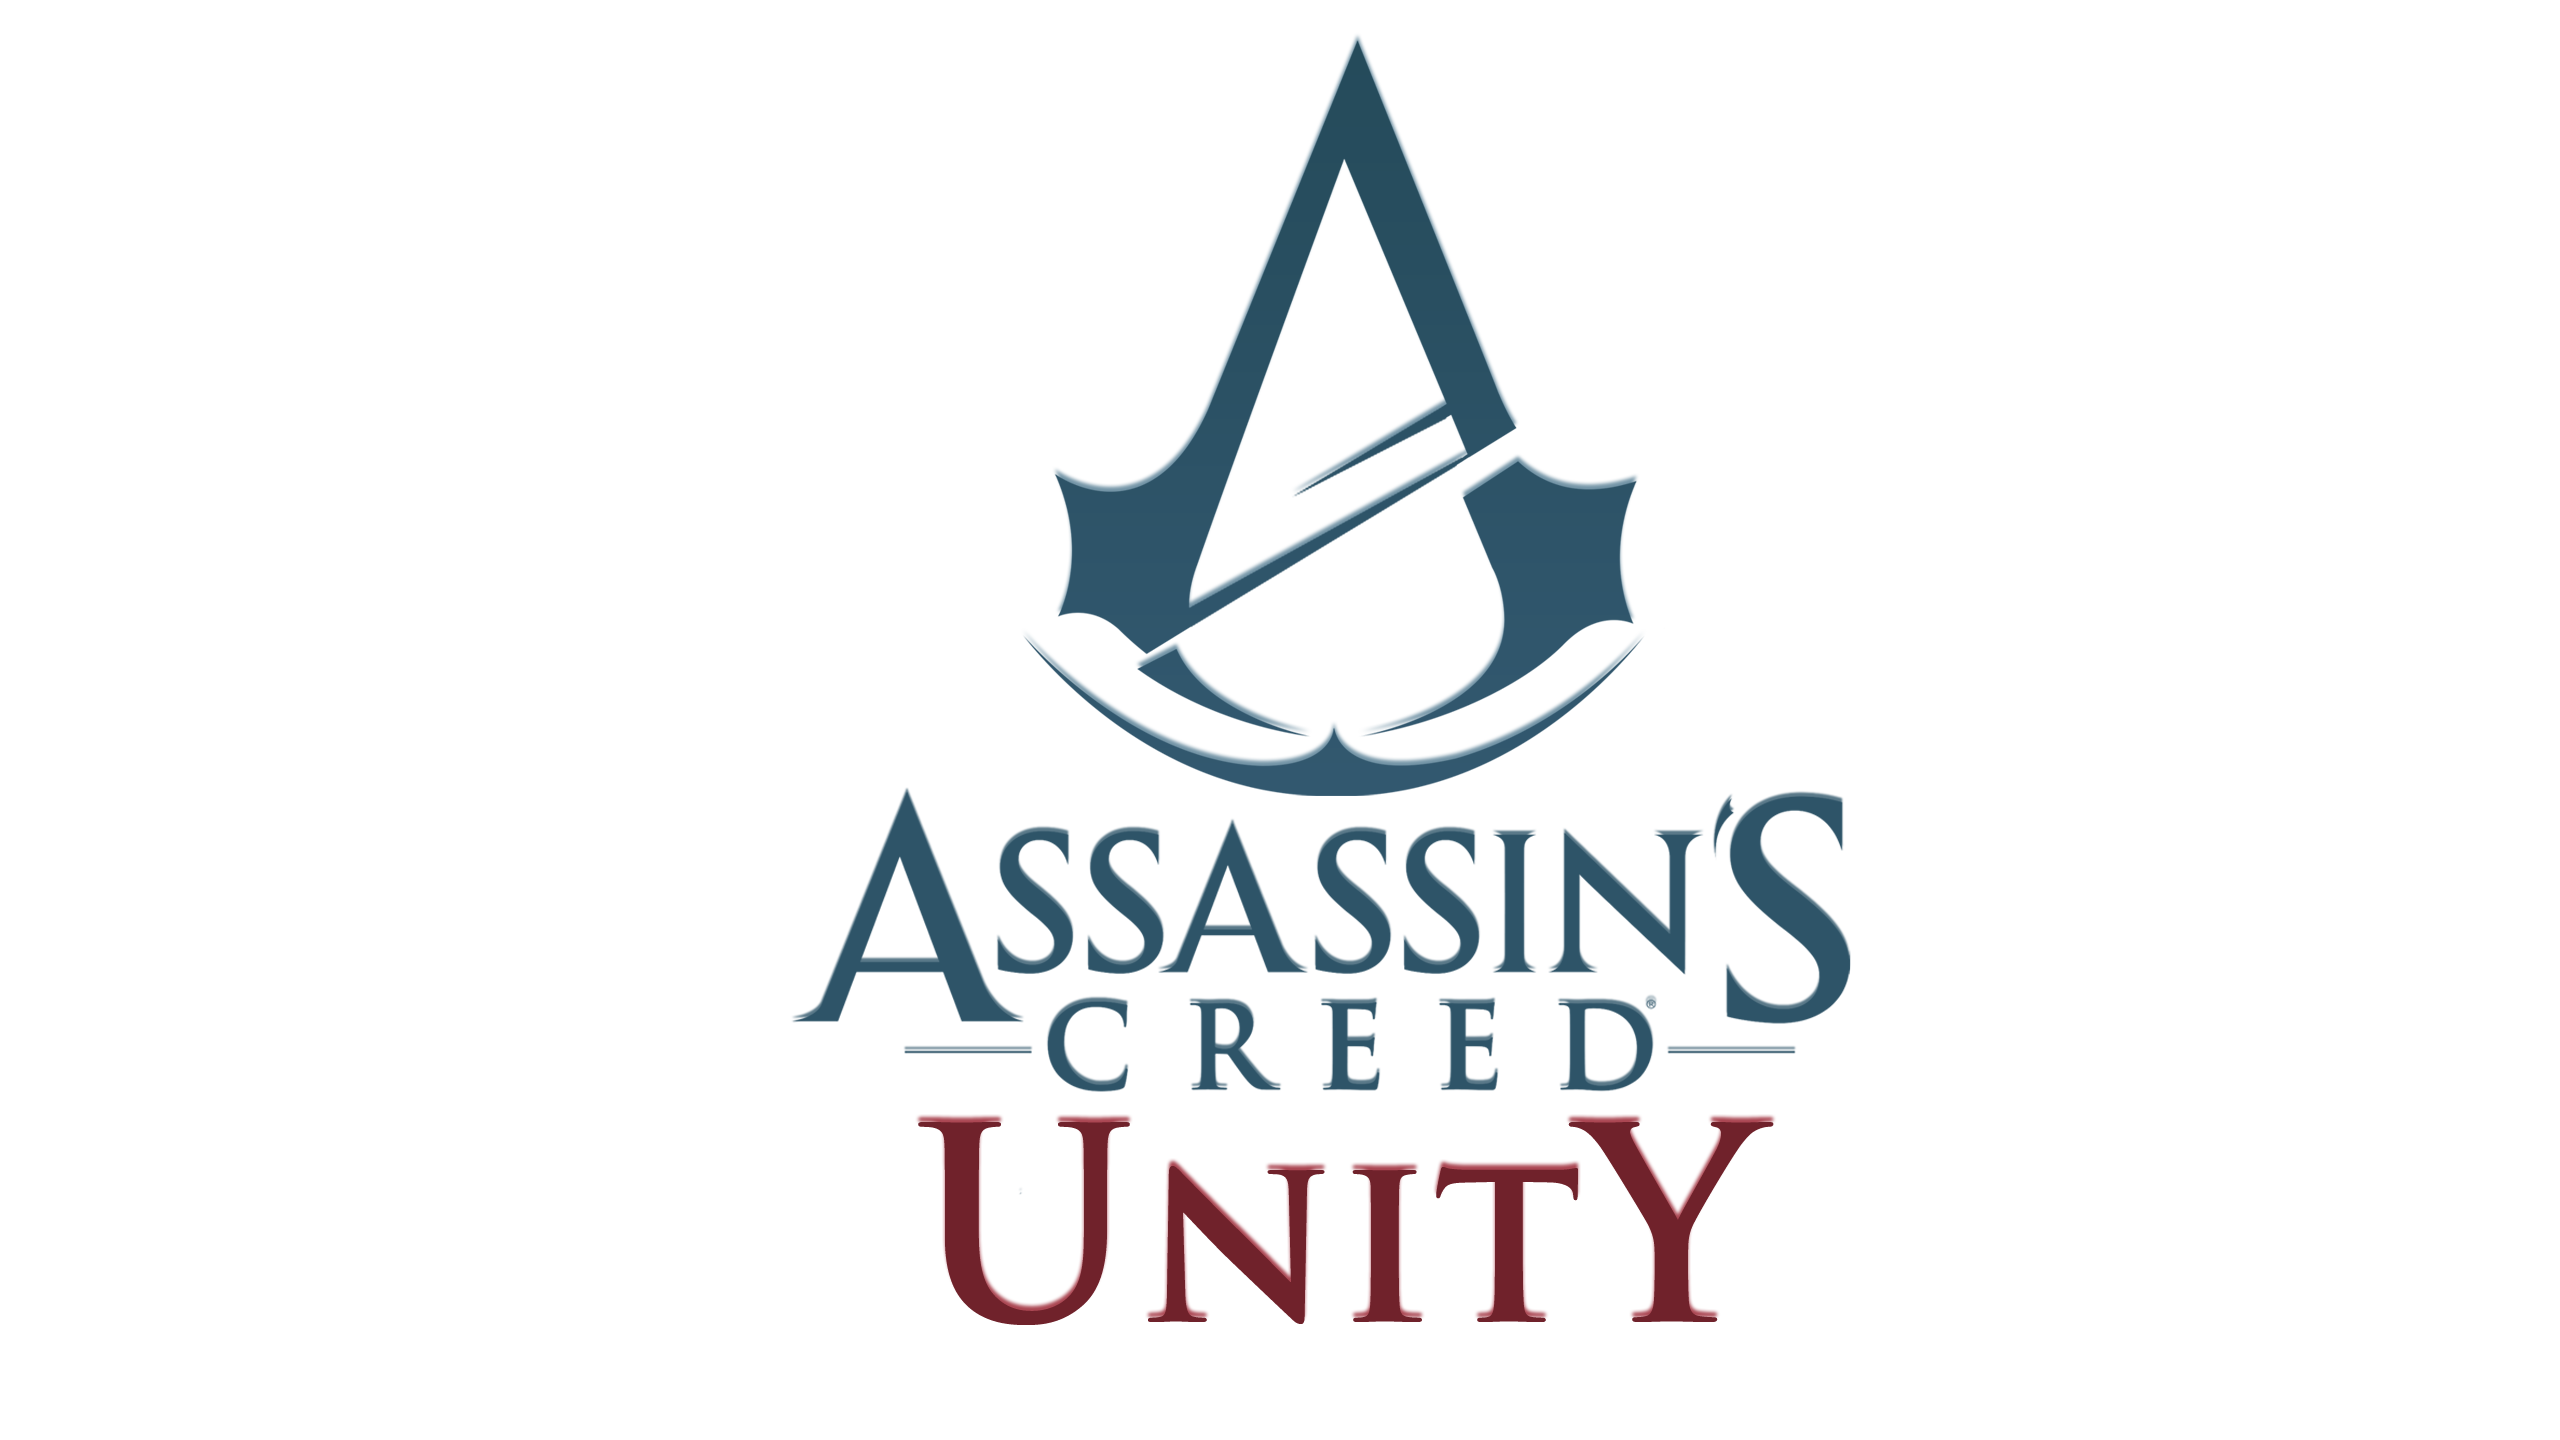 Assassin’s Creed Unity, un nuovo lungo video gameplay dalla Gamescom 2014